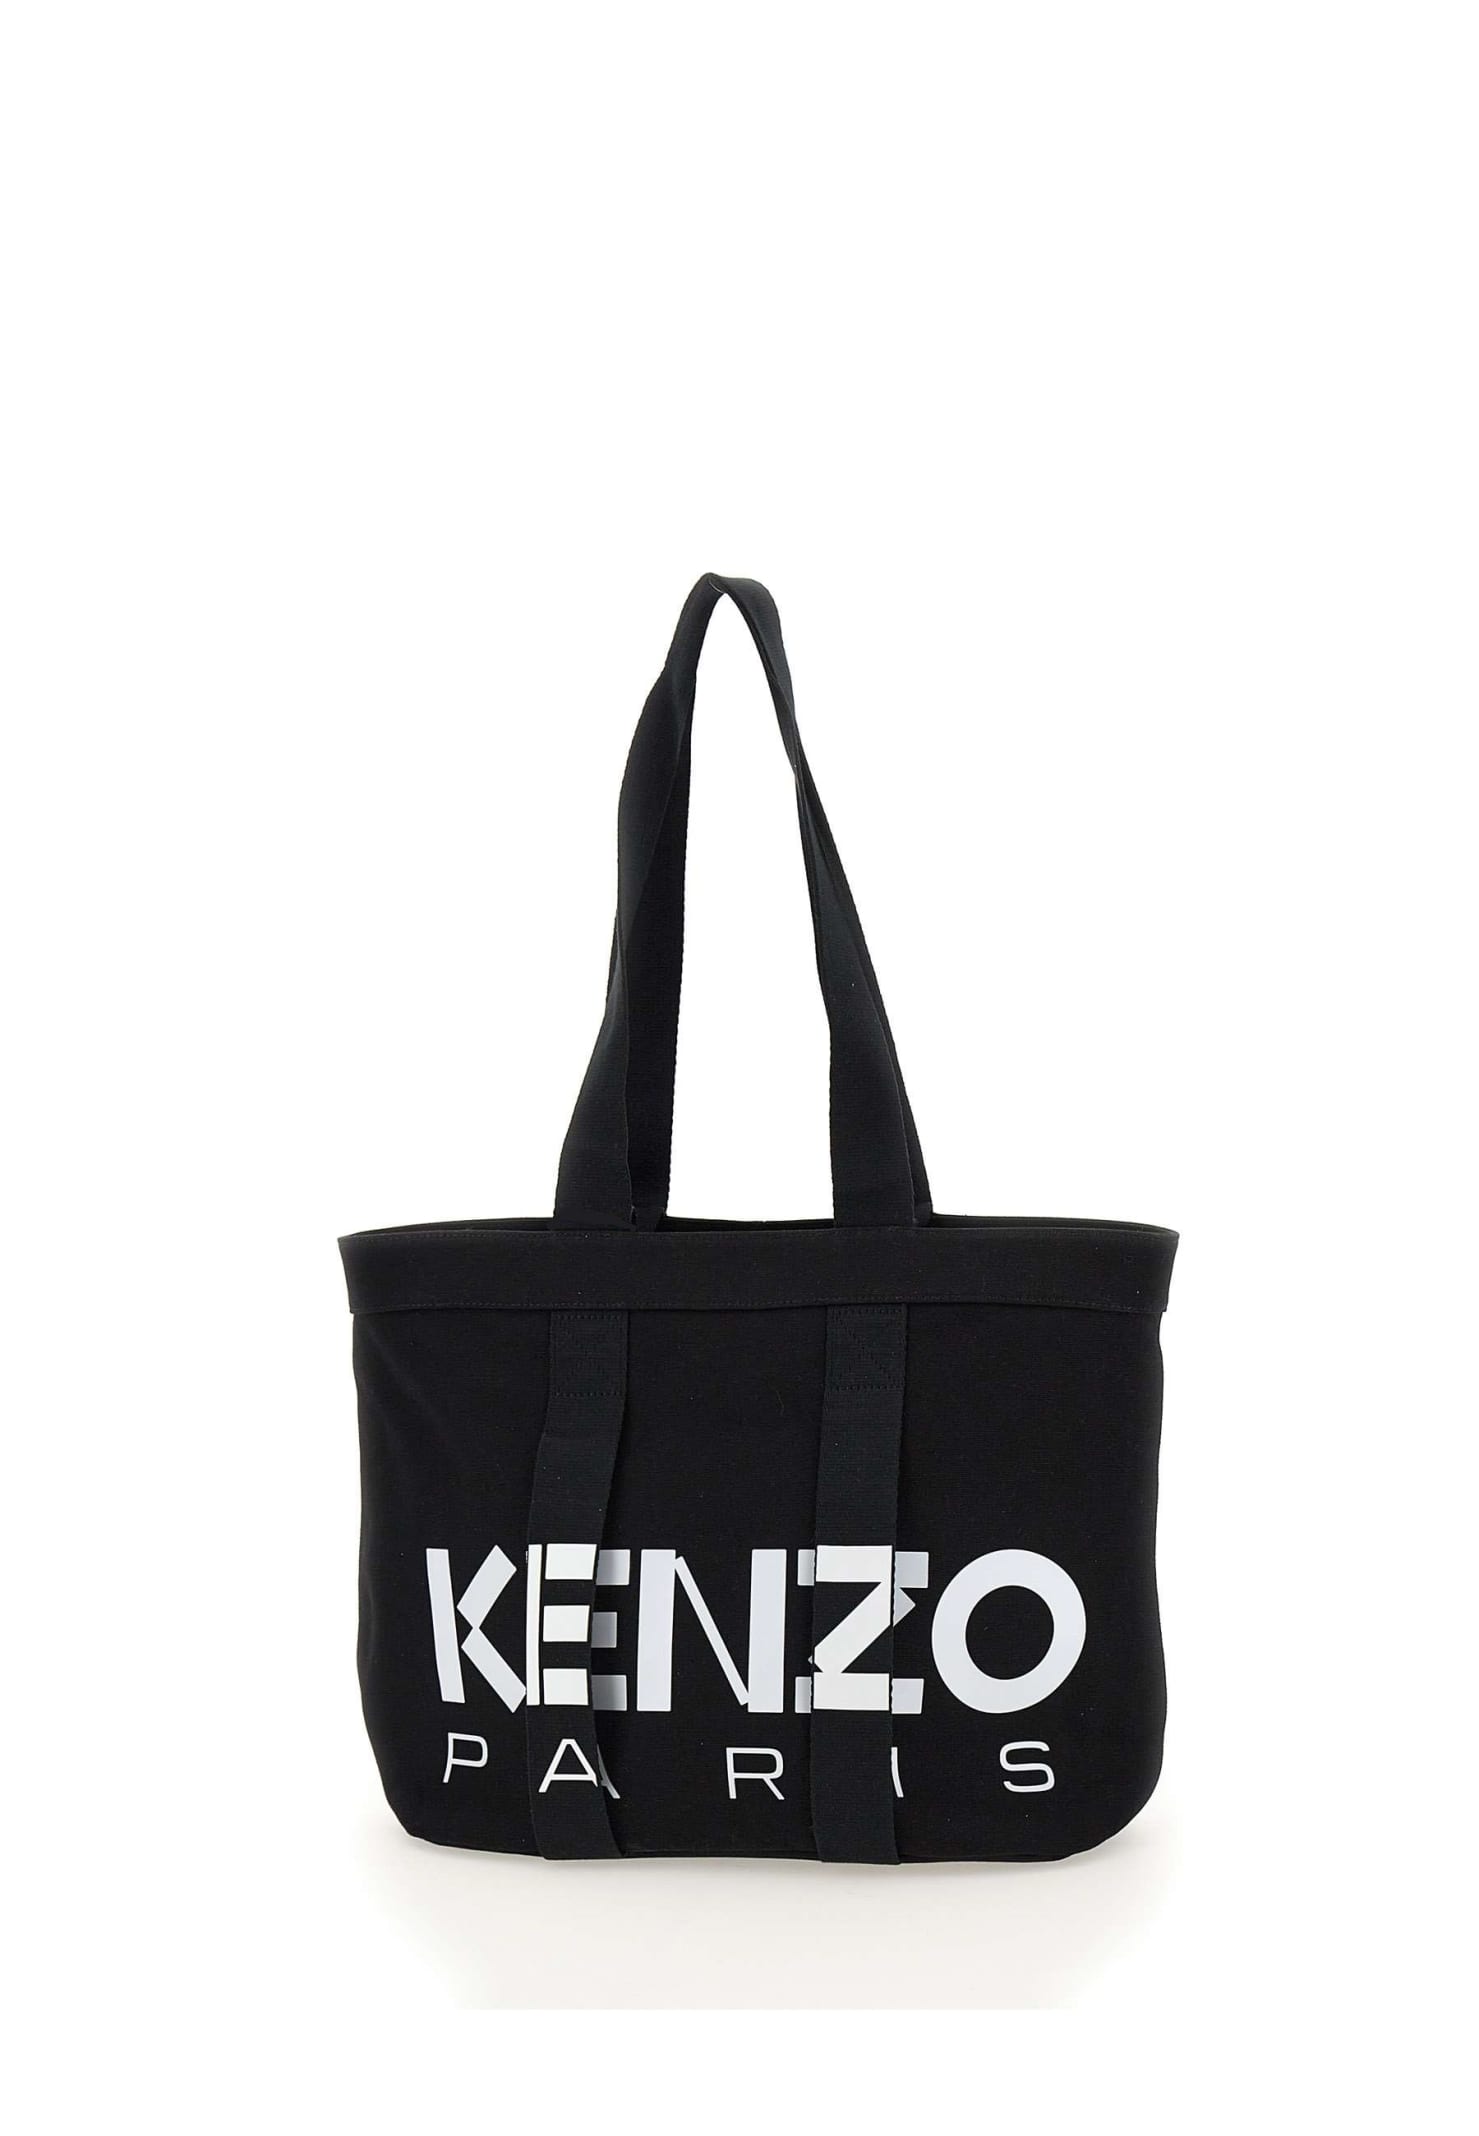 Kenzo Paris large Tote Bag